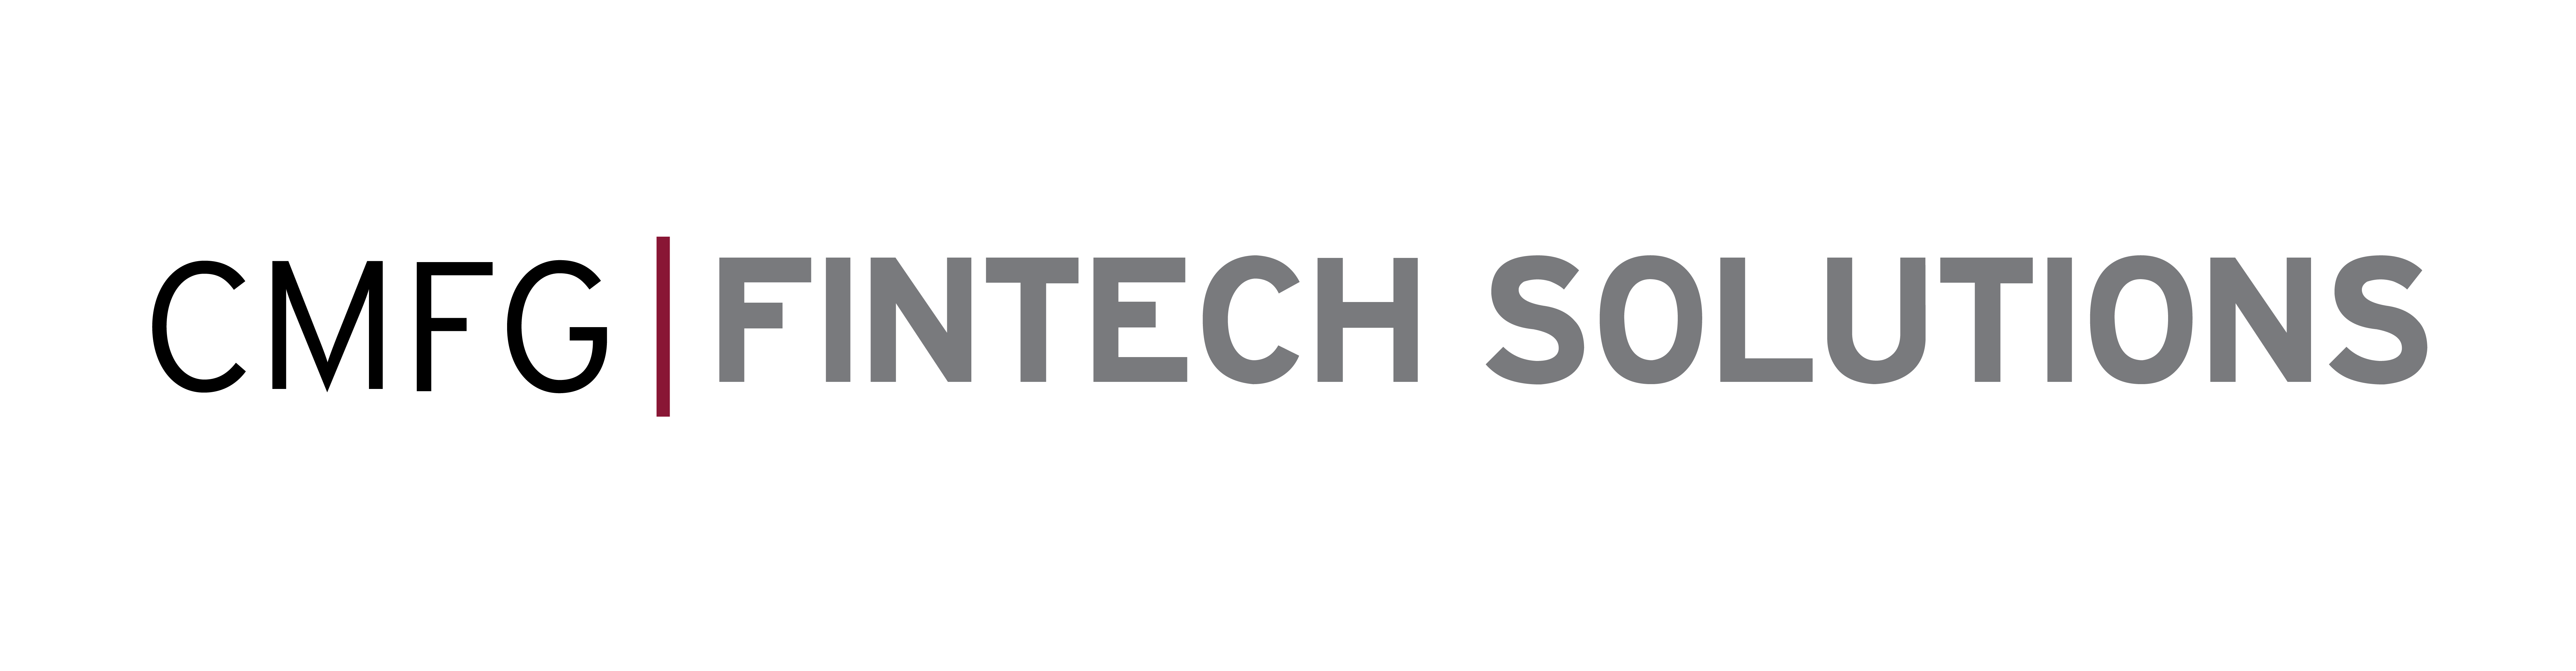 CMFG-Fintech Solutions-Vertical-Logo.png 